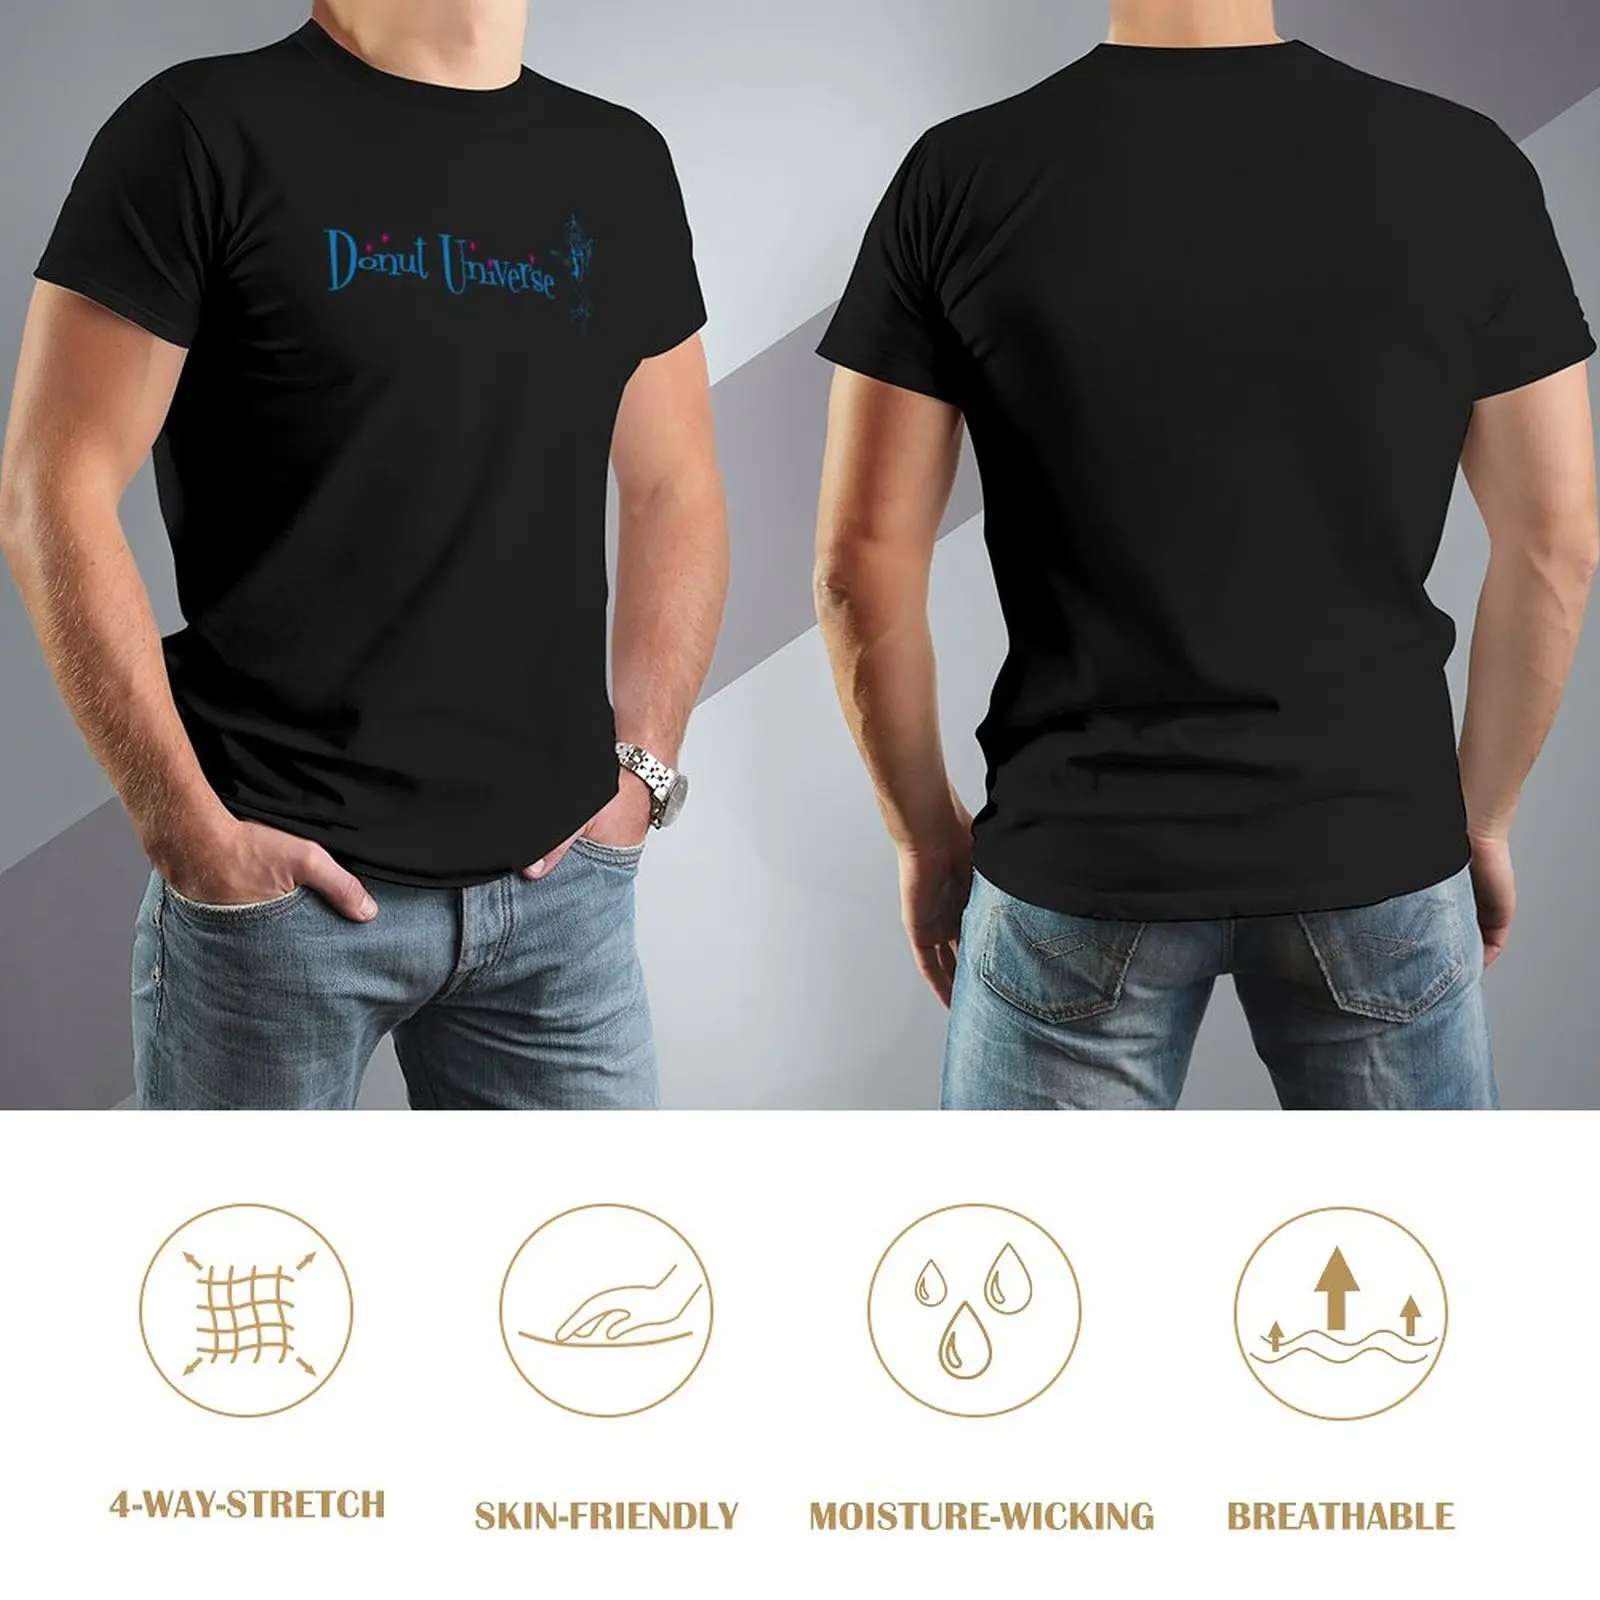 Вселенная пончиков - Горизонтальный логотип - Одежда, футболки, спортивные рубашки, забавные футболки, футболки для тяжеловесов, простые черные футболки для мужчин Изображение 2